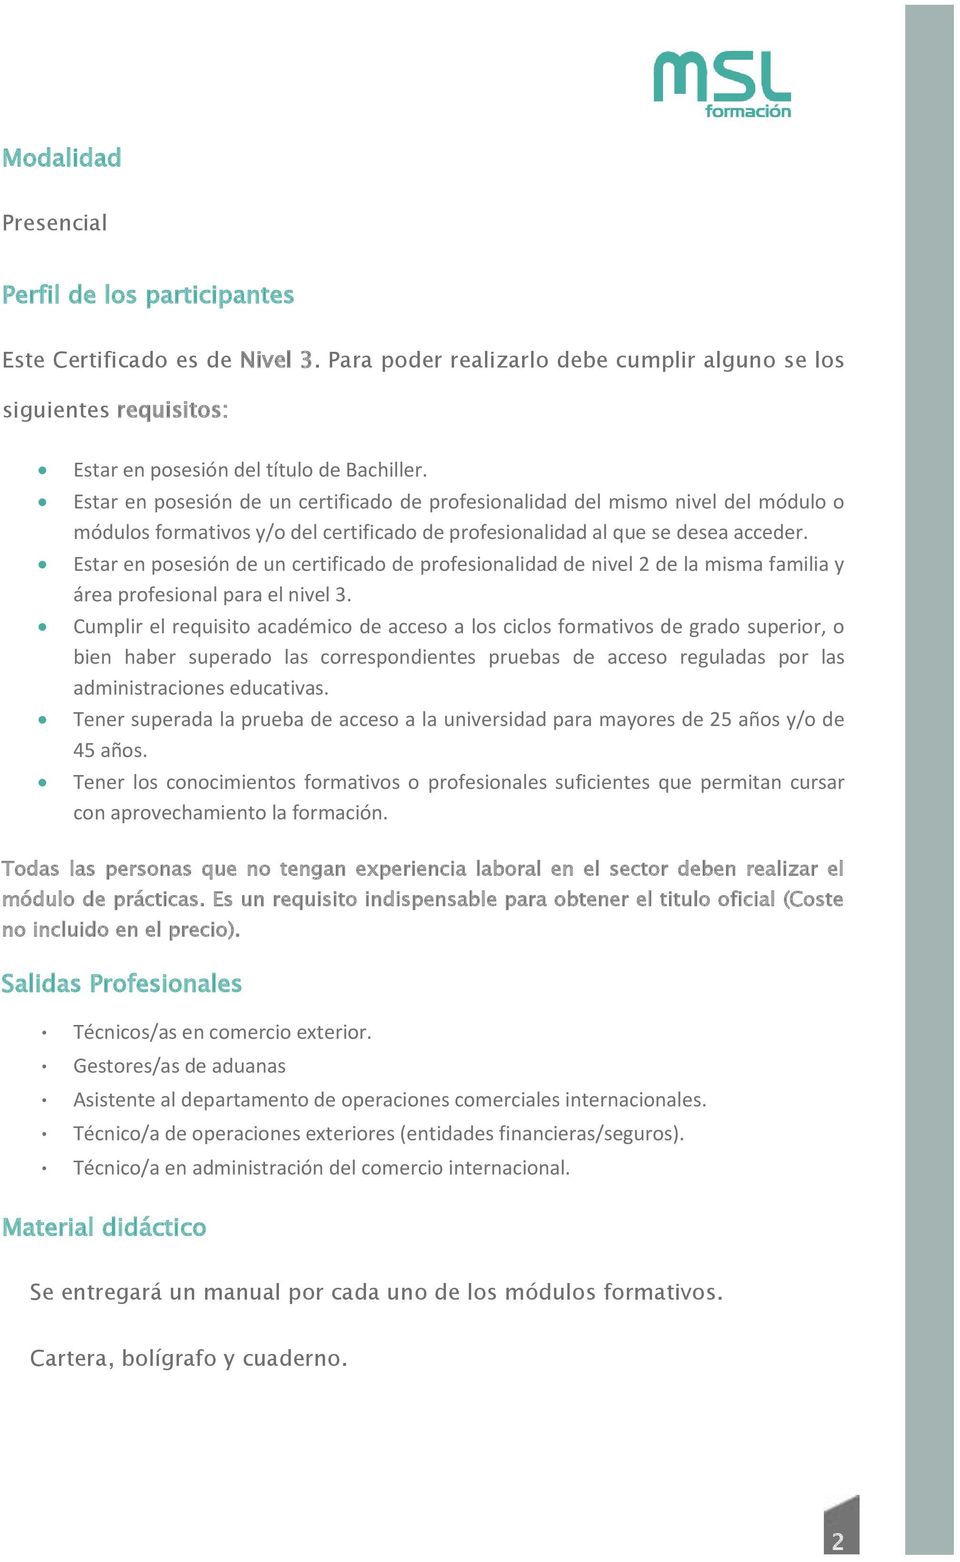 Estar en posesión de un certificado de profesionalidad de nivel 2 de la misma familia y área profesional para el nivel 3.